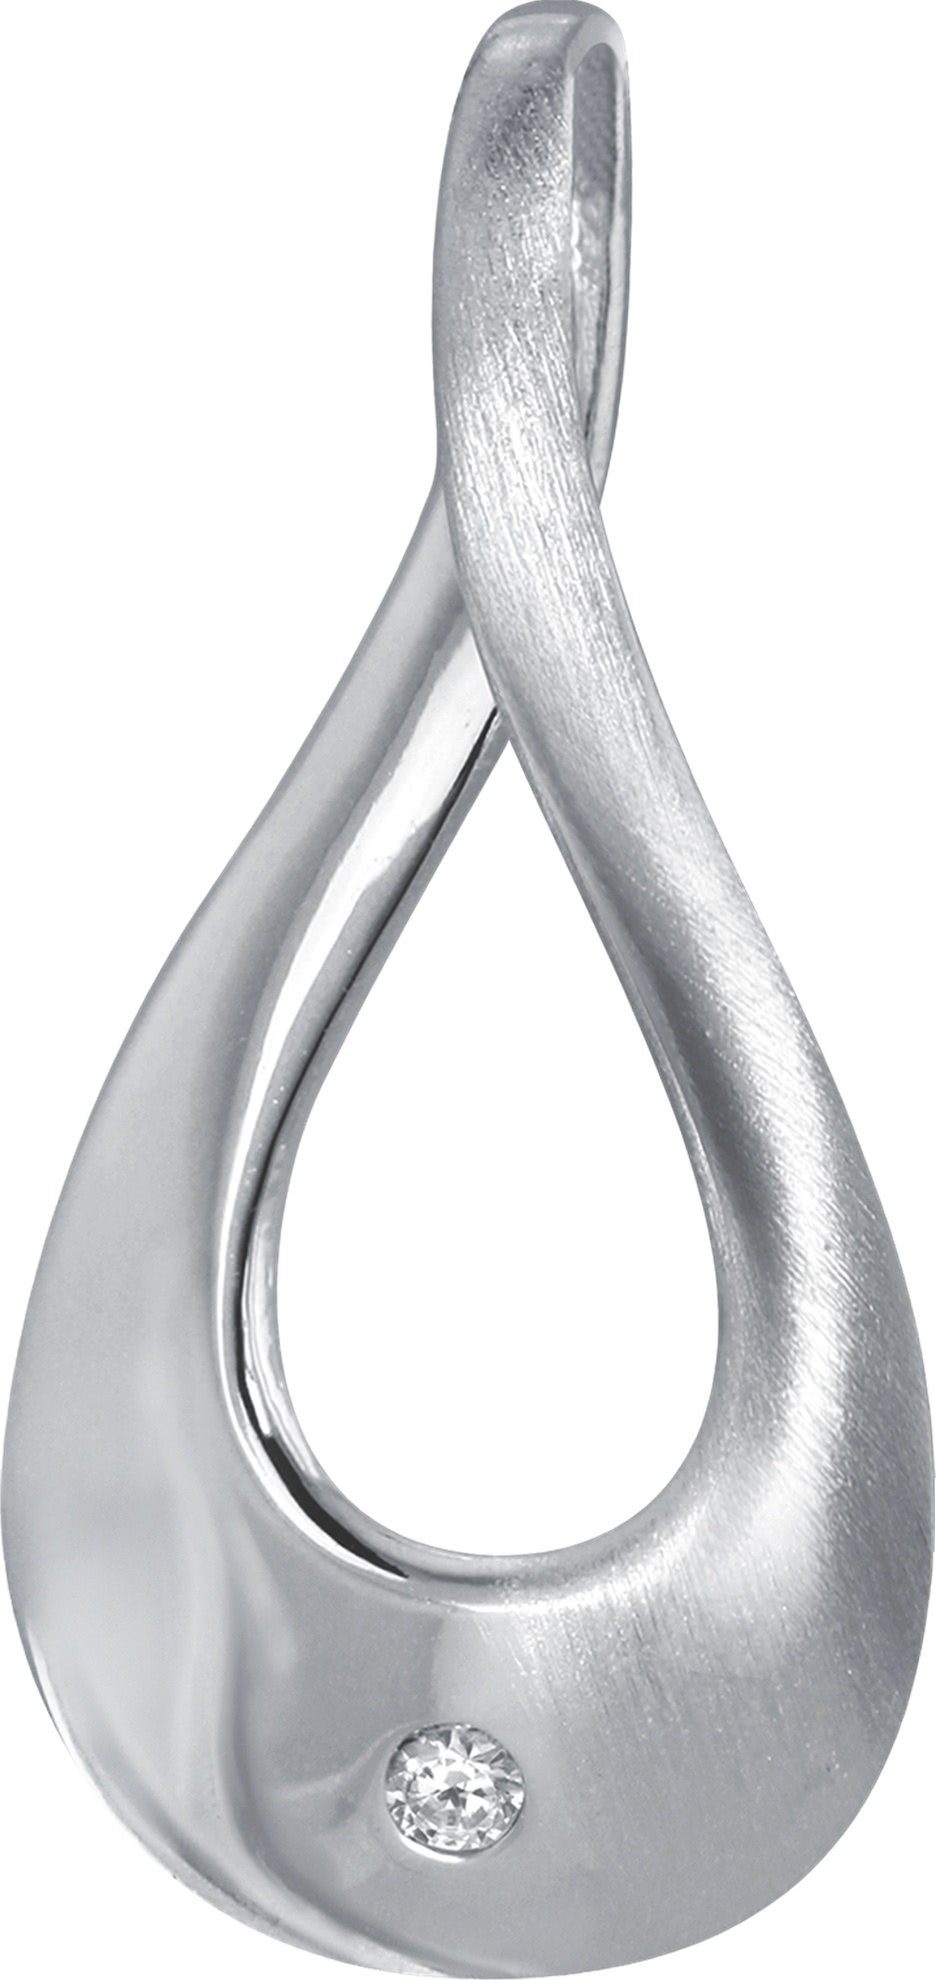 Silber, Balia 925 Kettenanhänger Damen (Elegance) Silber Balia Kettenanhänger Sterling ca. 2,5cm, Kettenanhänger